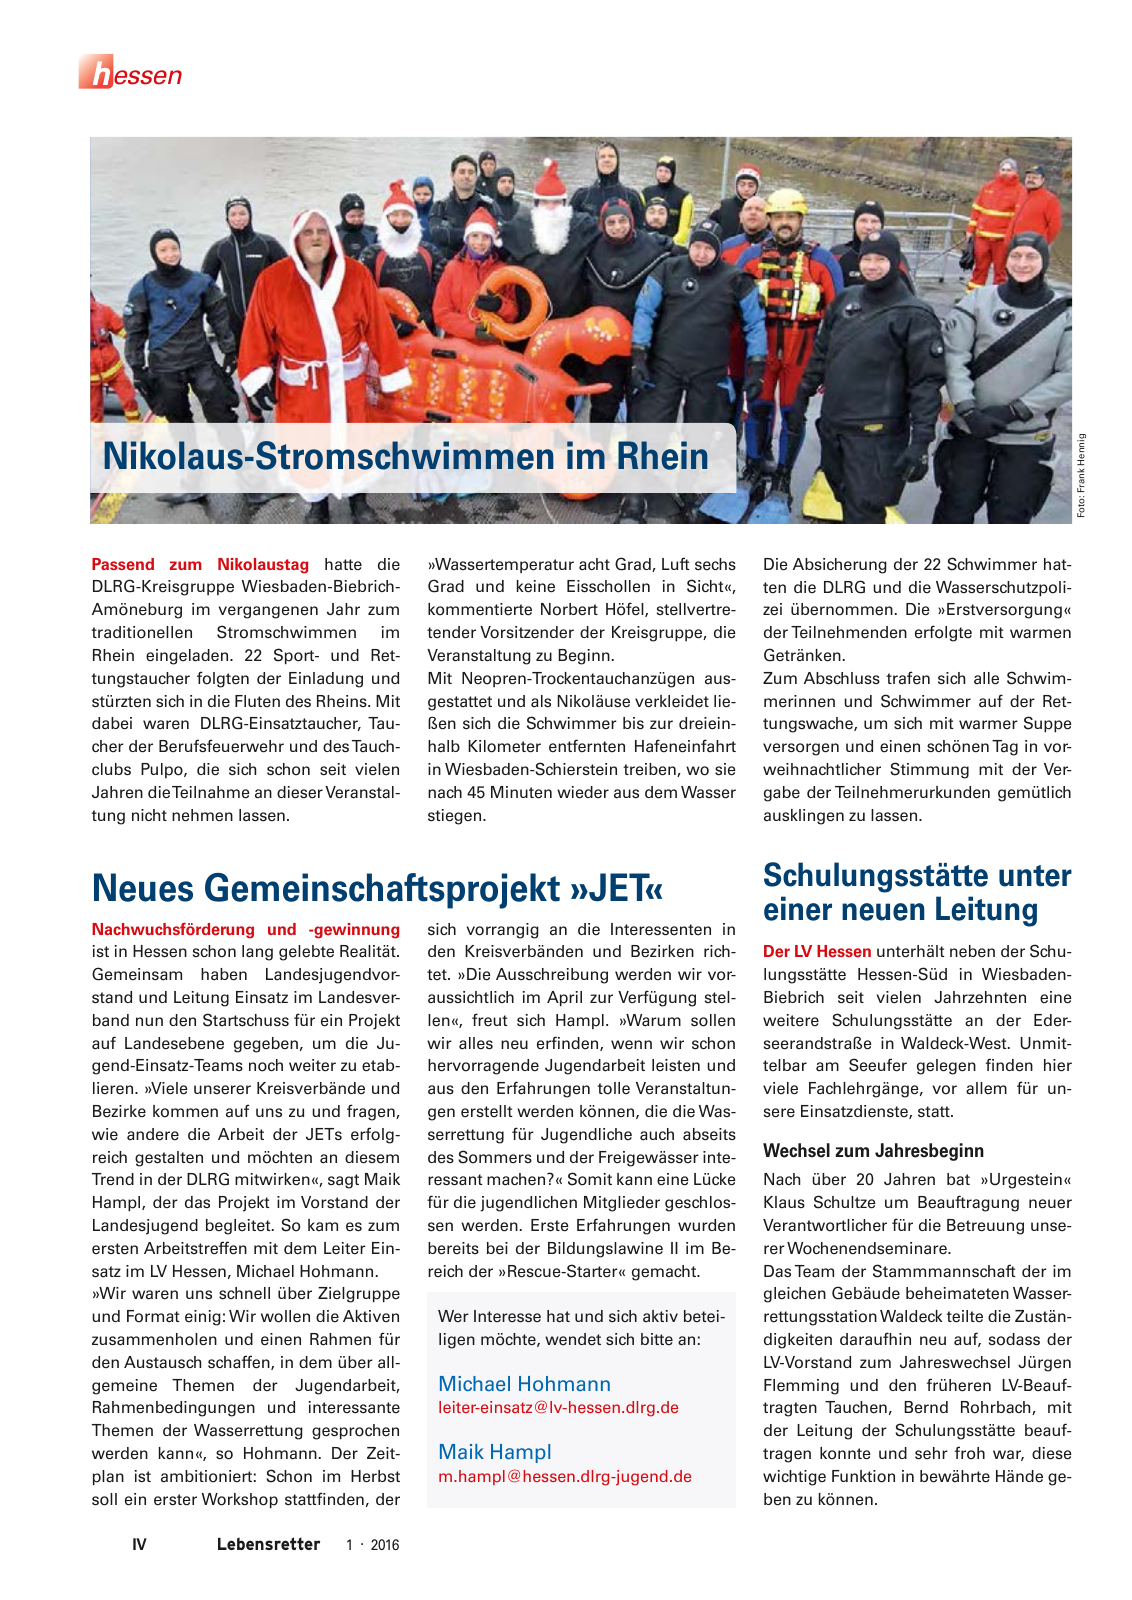 Vorschau Lebensretter 1/2016 - Regionalausgabe Hessen Seite 6